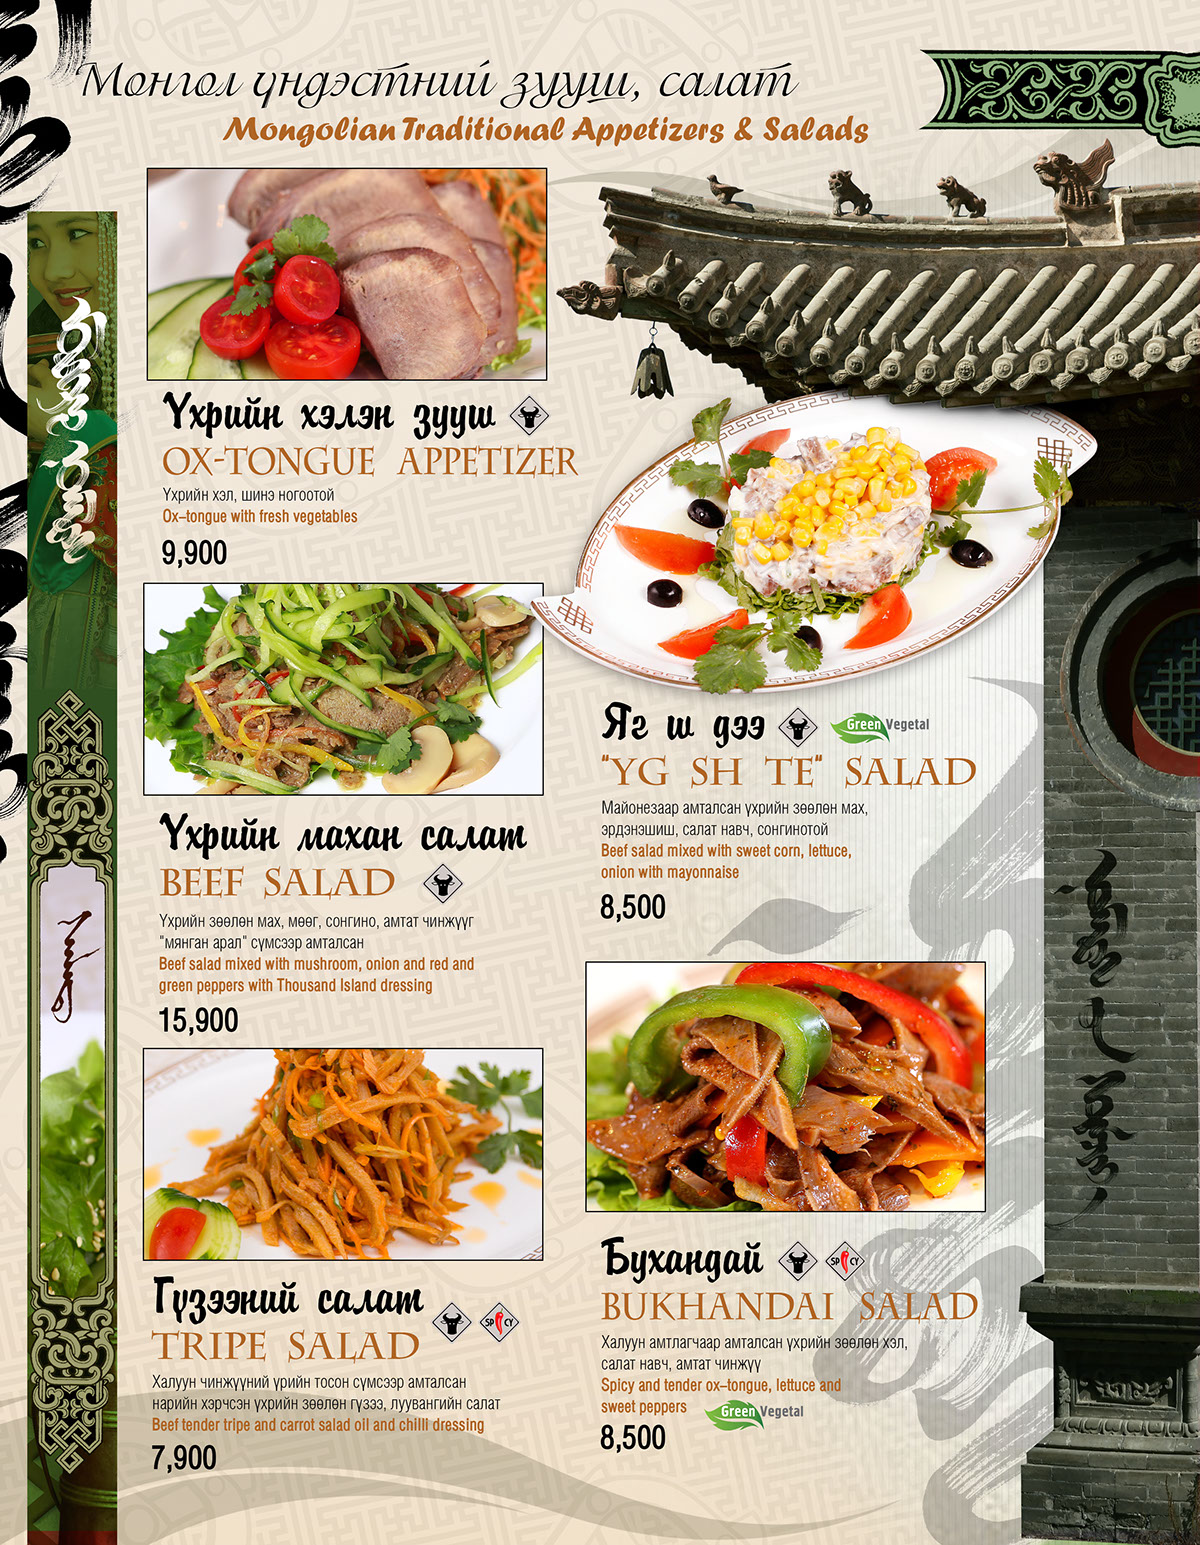 Food  drink menu nomads modern nomads mongolian restaurant eat restaurant meal